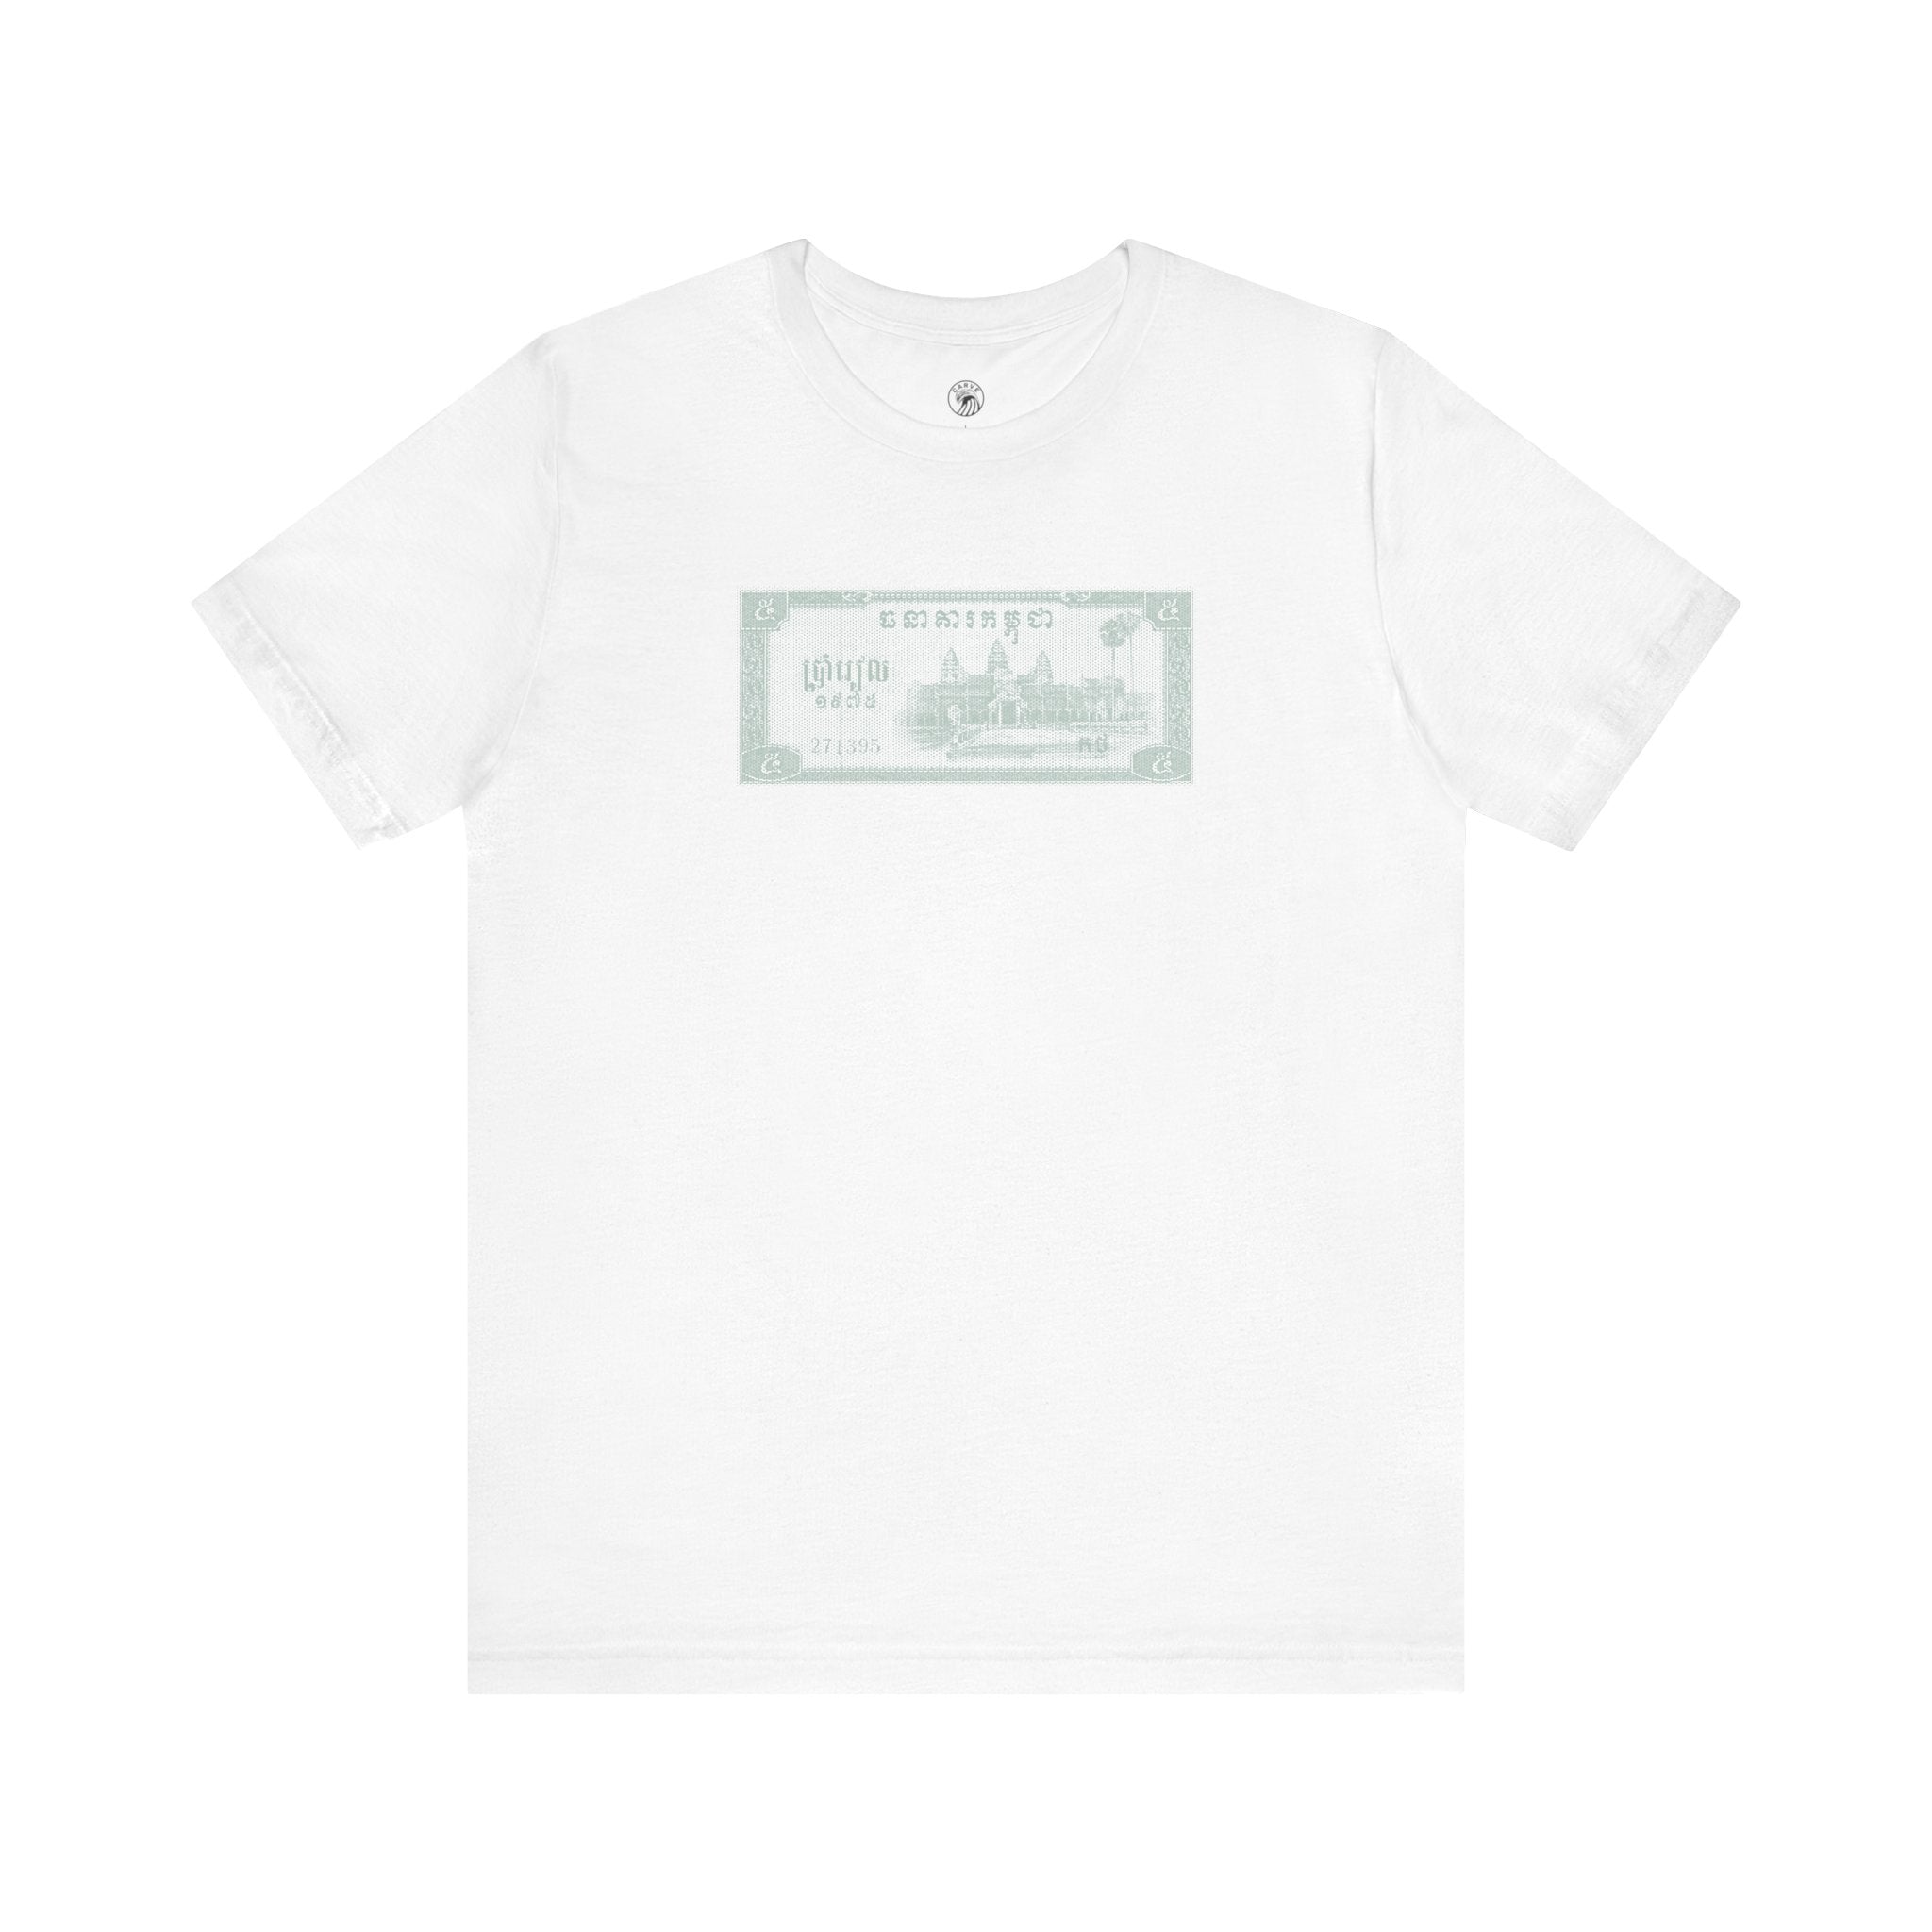 T-shirt: Riel Cash